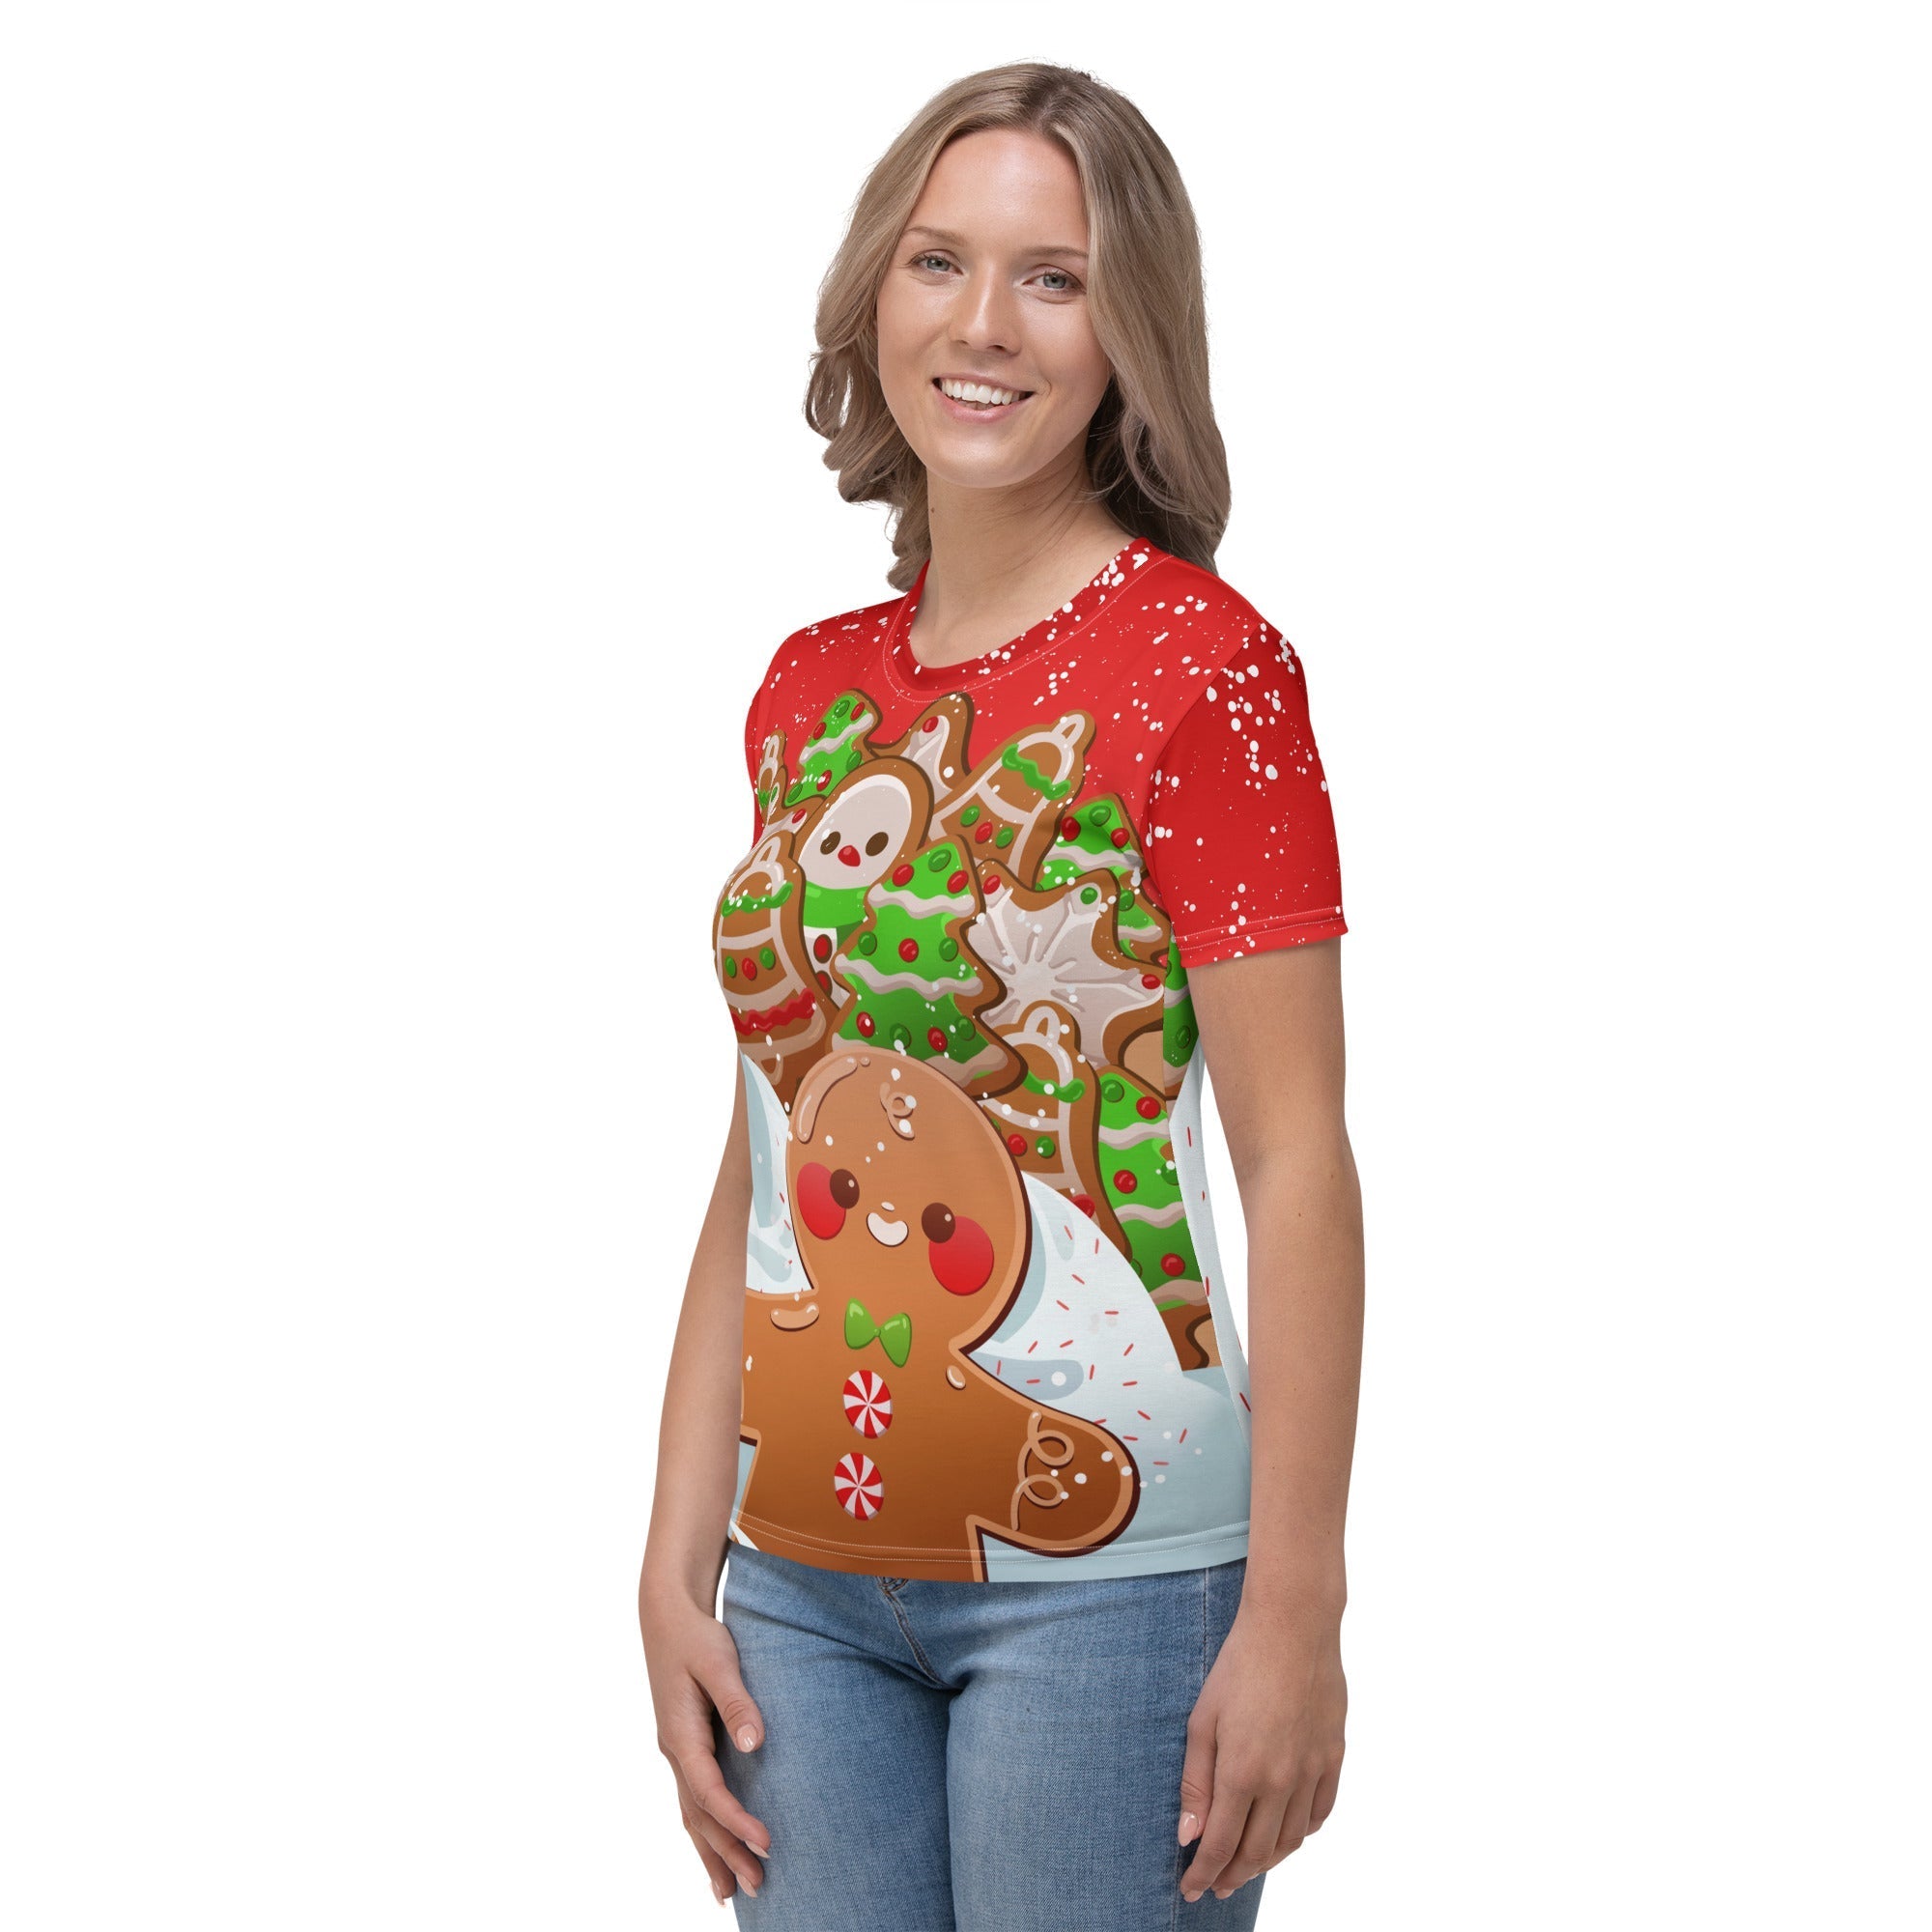 Gingerbread Man T-shirt